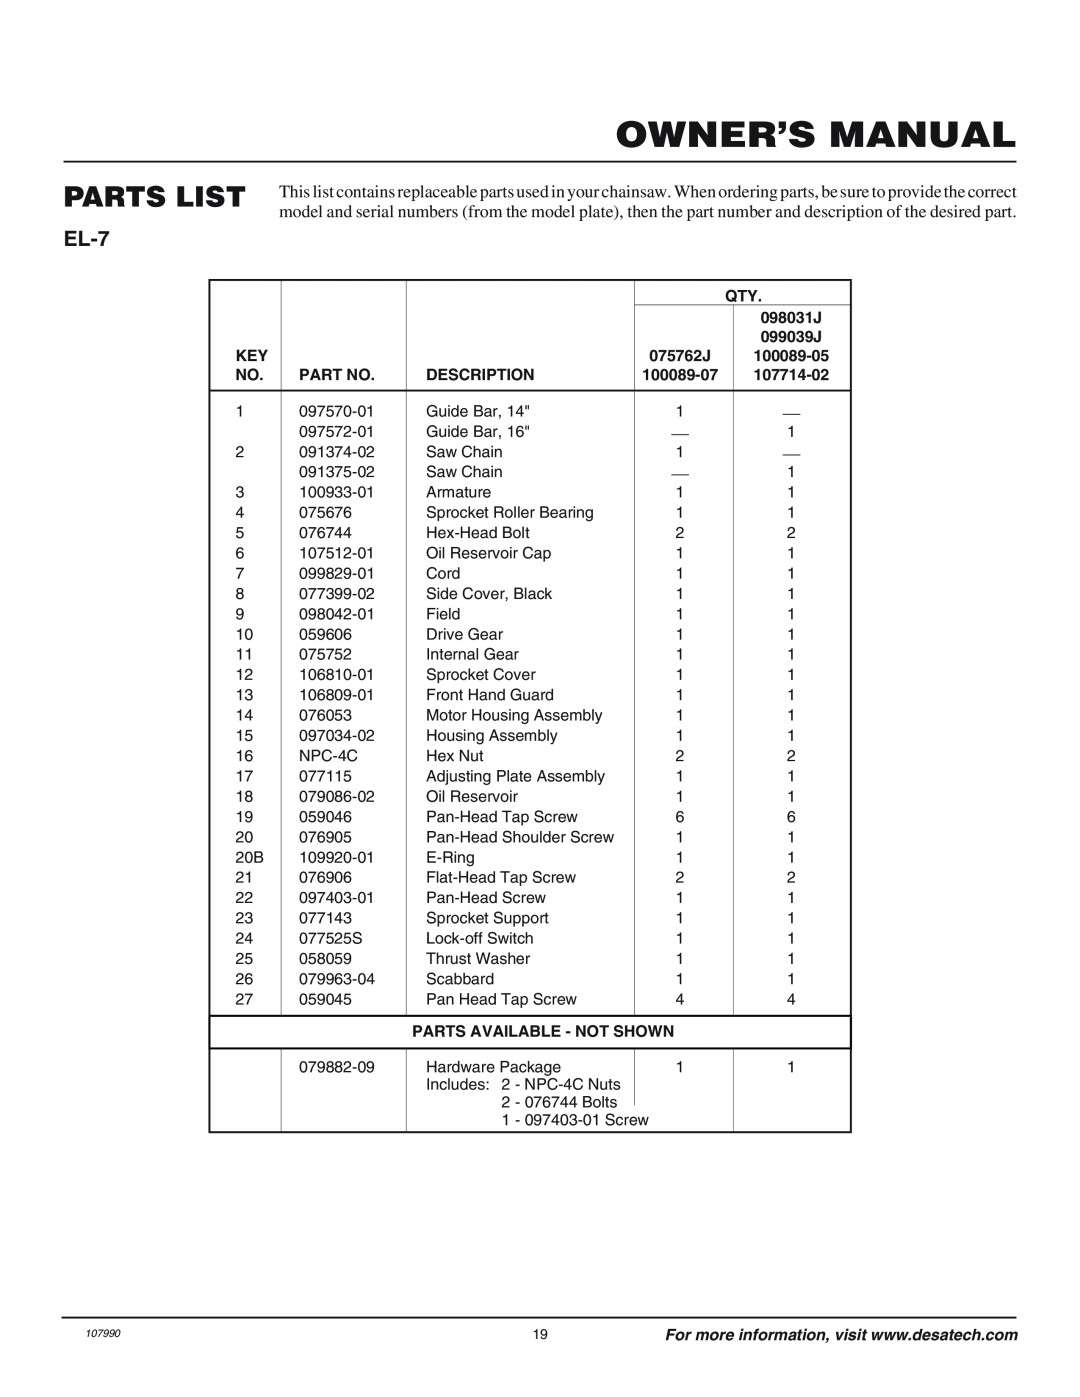 Remington owner manual Owner’S Manual, Parts List, EL-7, Description, Parts Available - Not Shown 